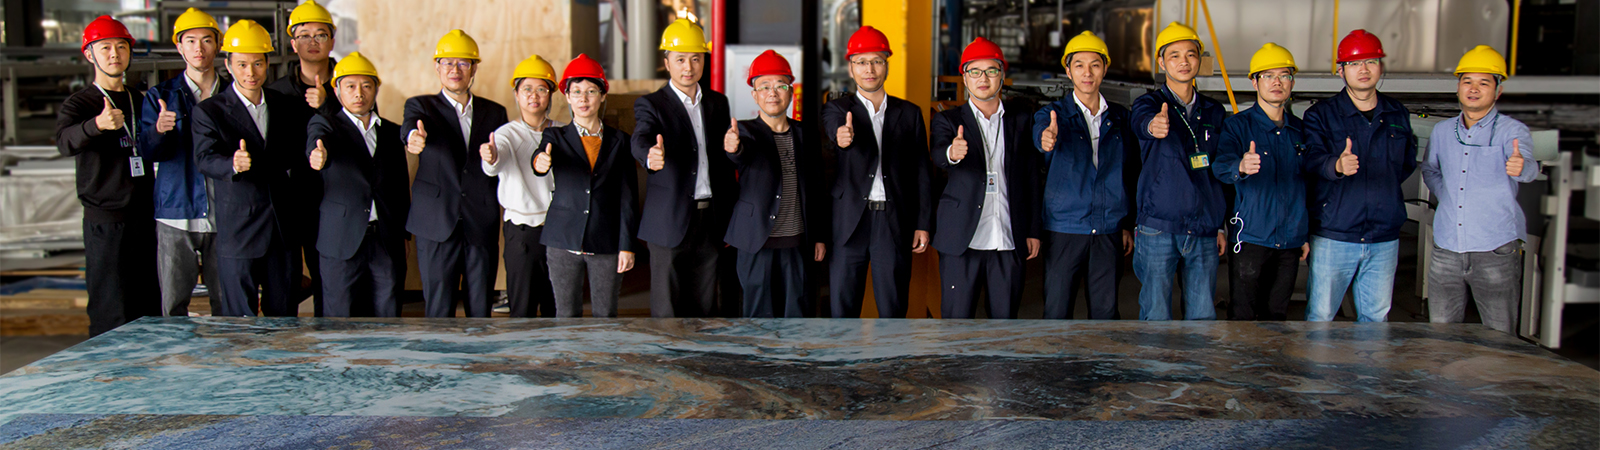 Вместе с SACMI компания Monalisa реализует проект производства самого крупного керамического сляба в мире